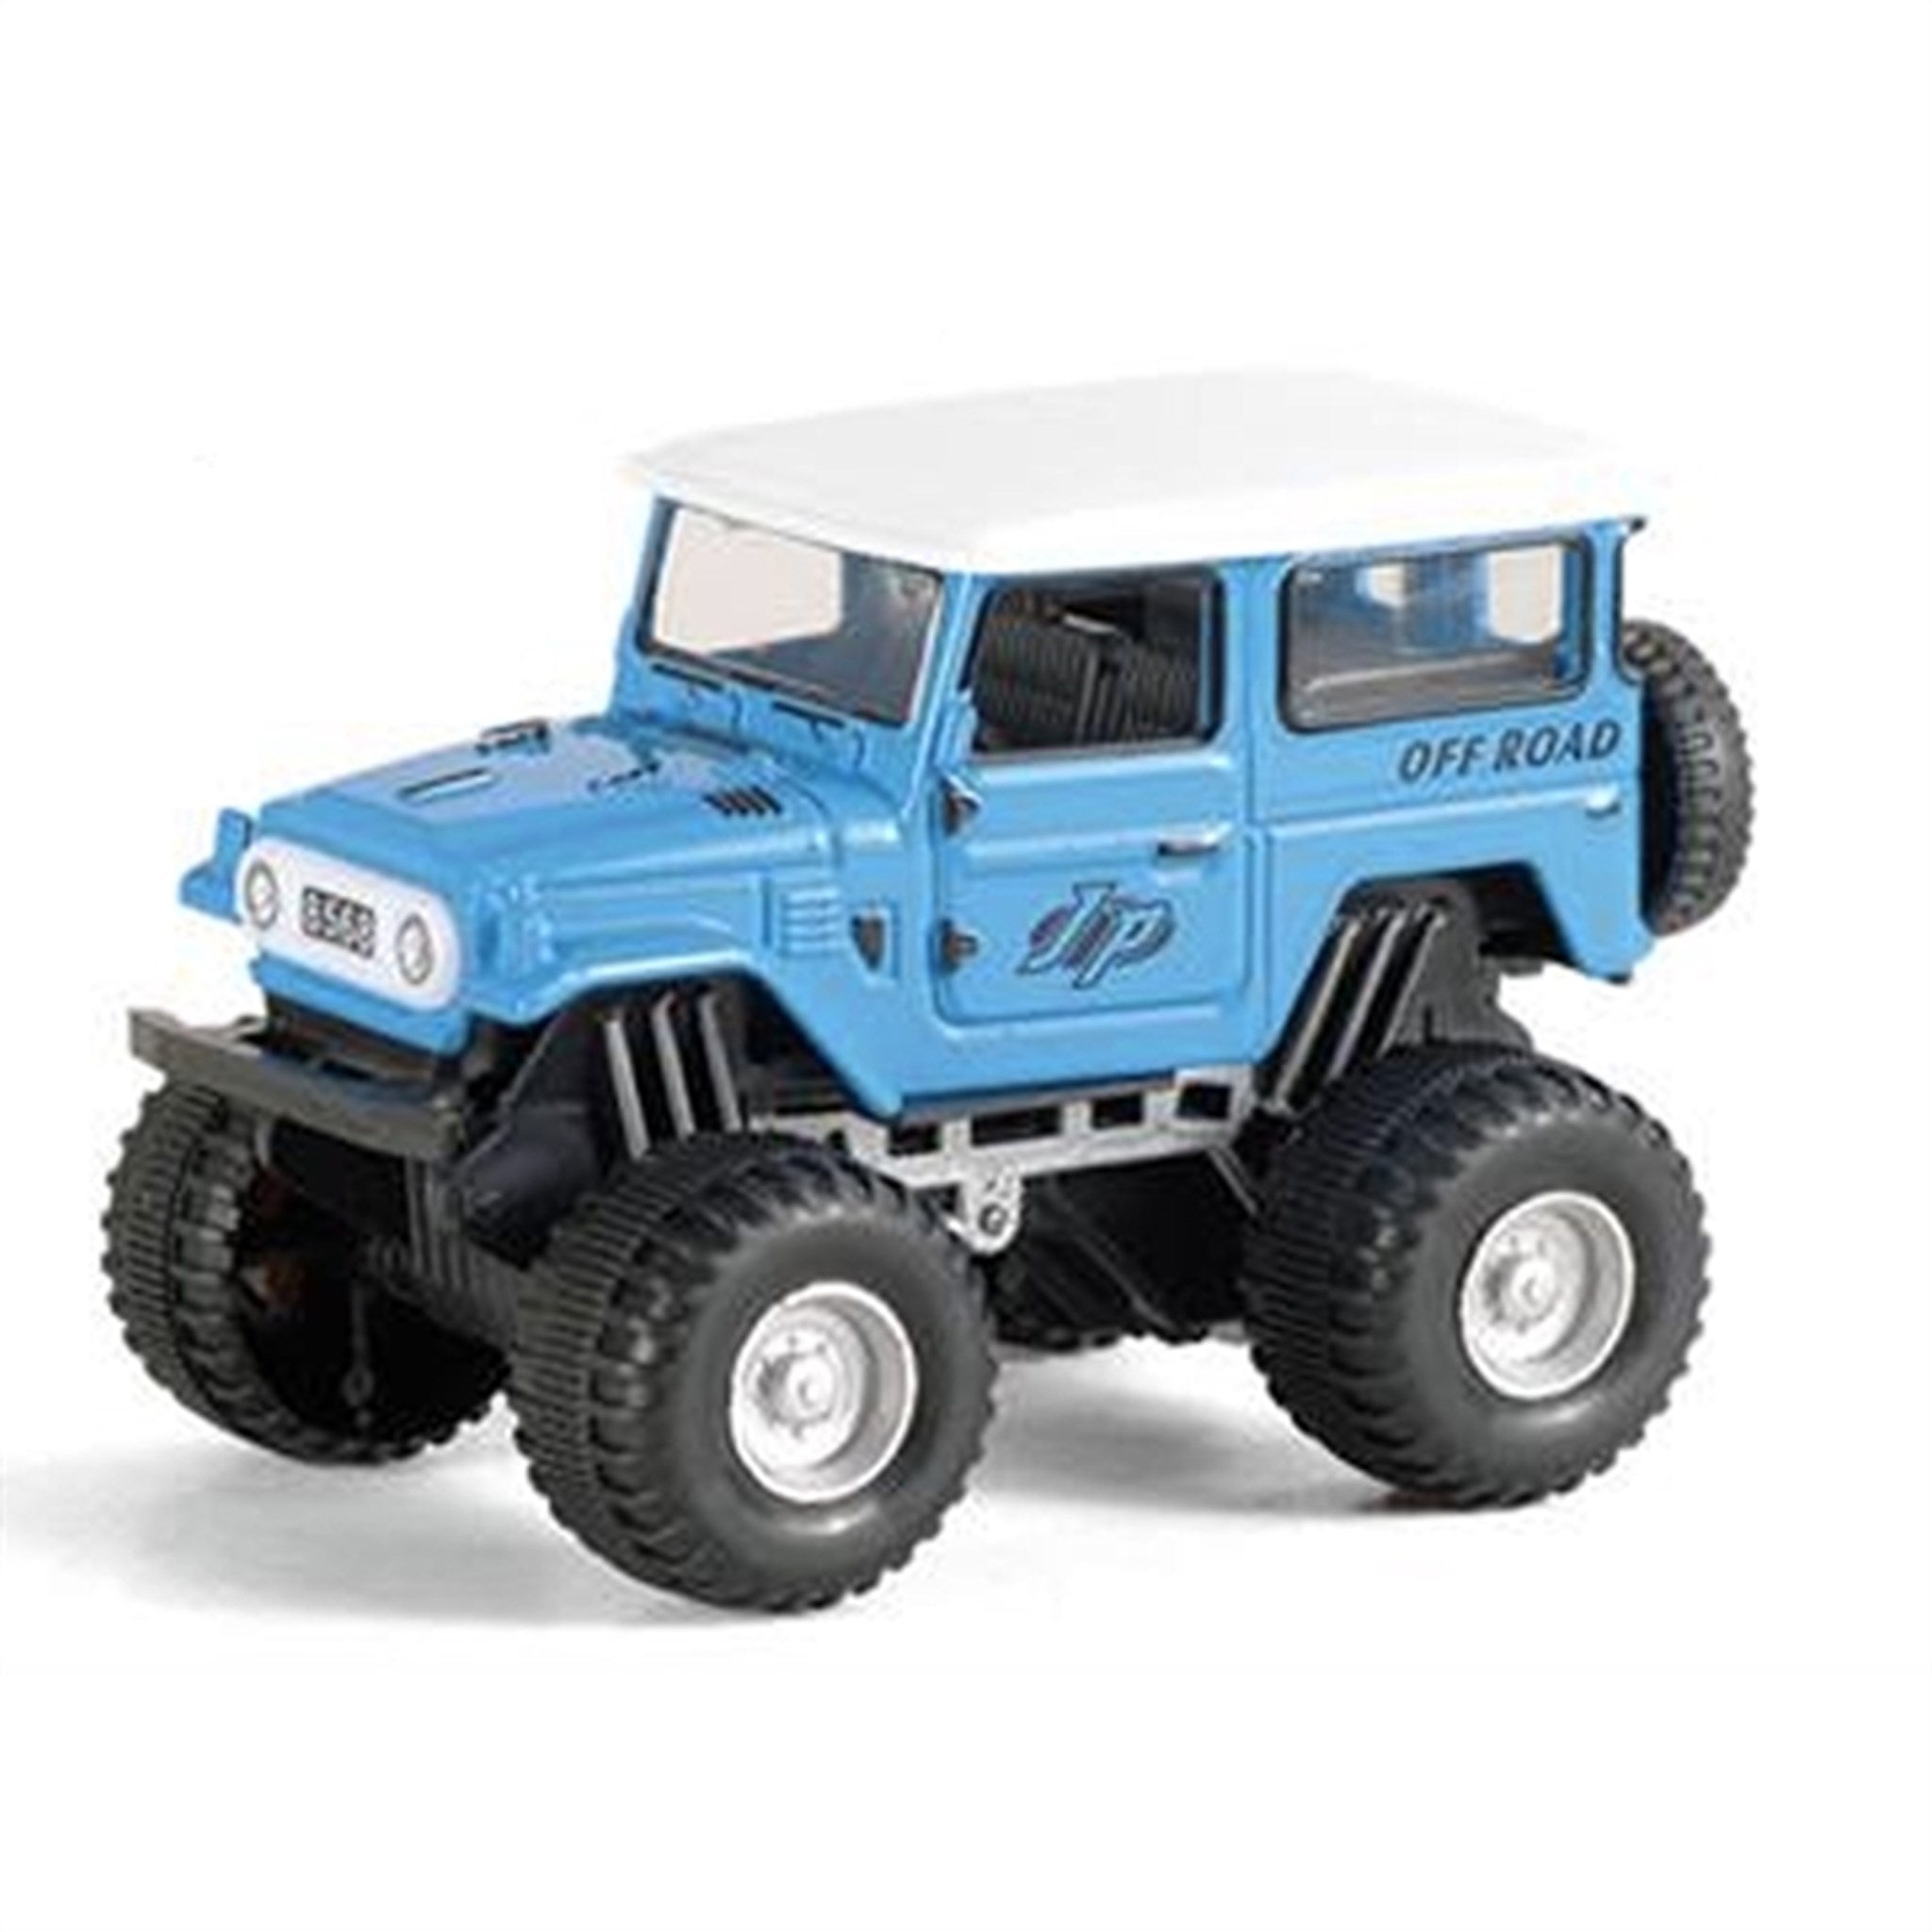 Magni Monster Truck - Blue